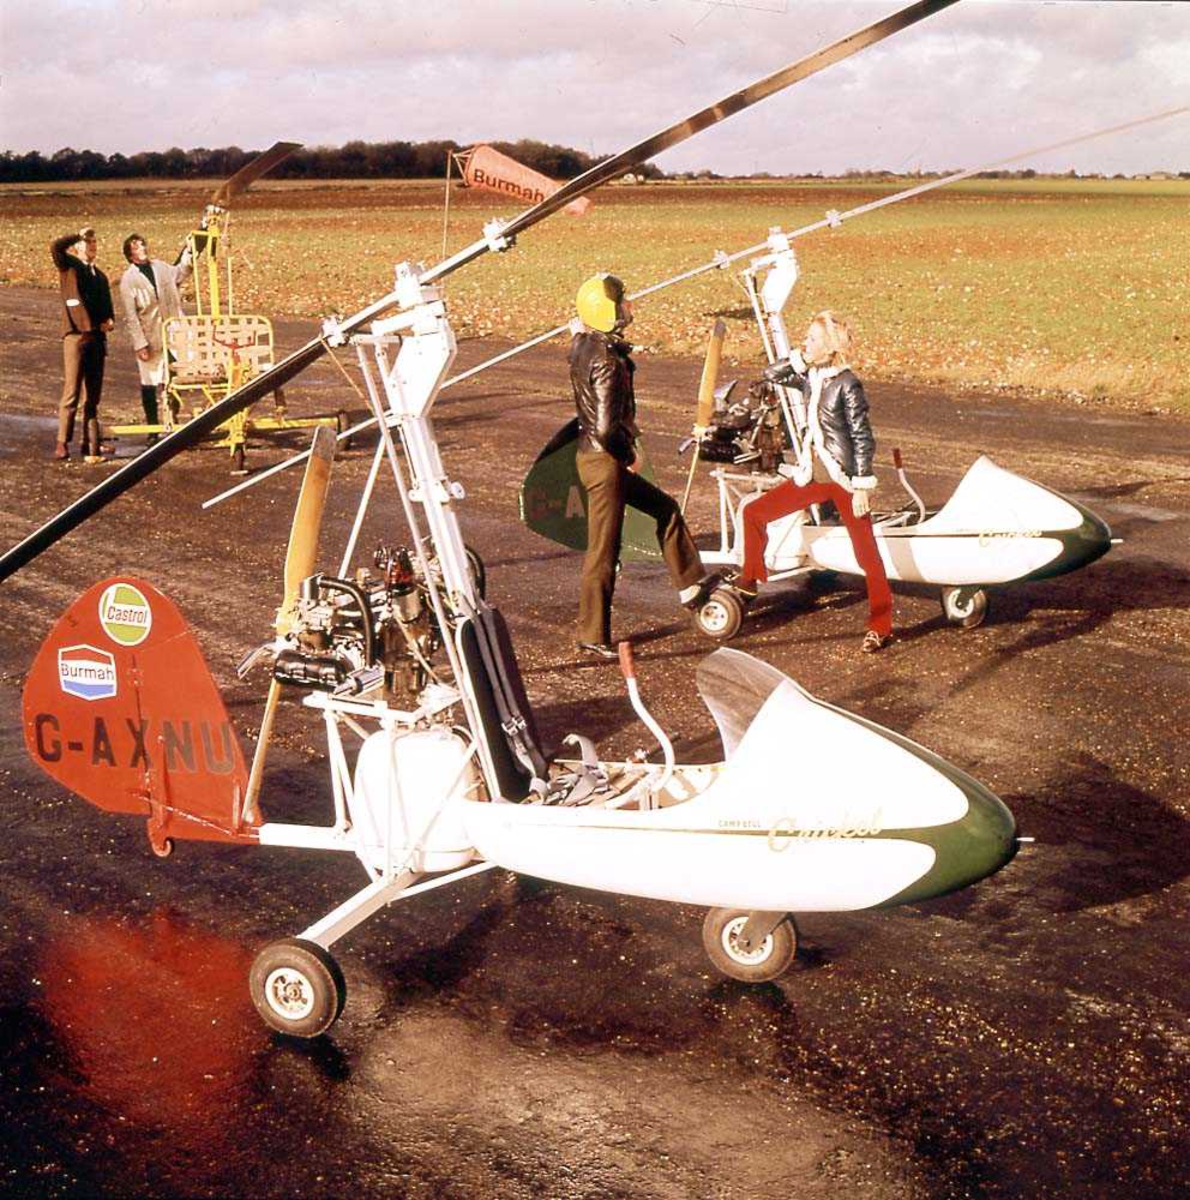 To helikopter på bakken, Campbell Cricket Autogyro. To personer står ved det ene helikoptret. To personer i bakgrunnen.